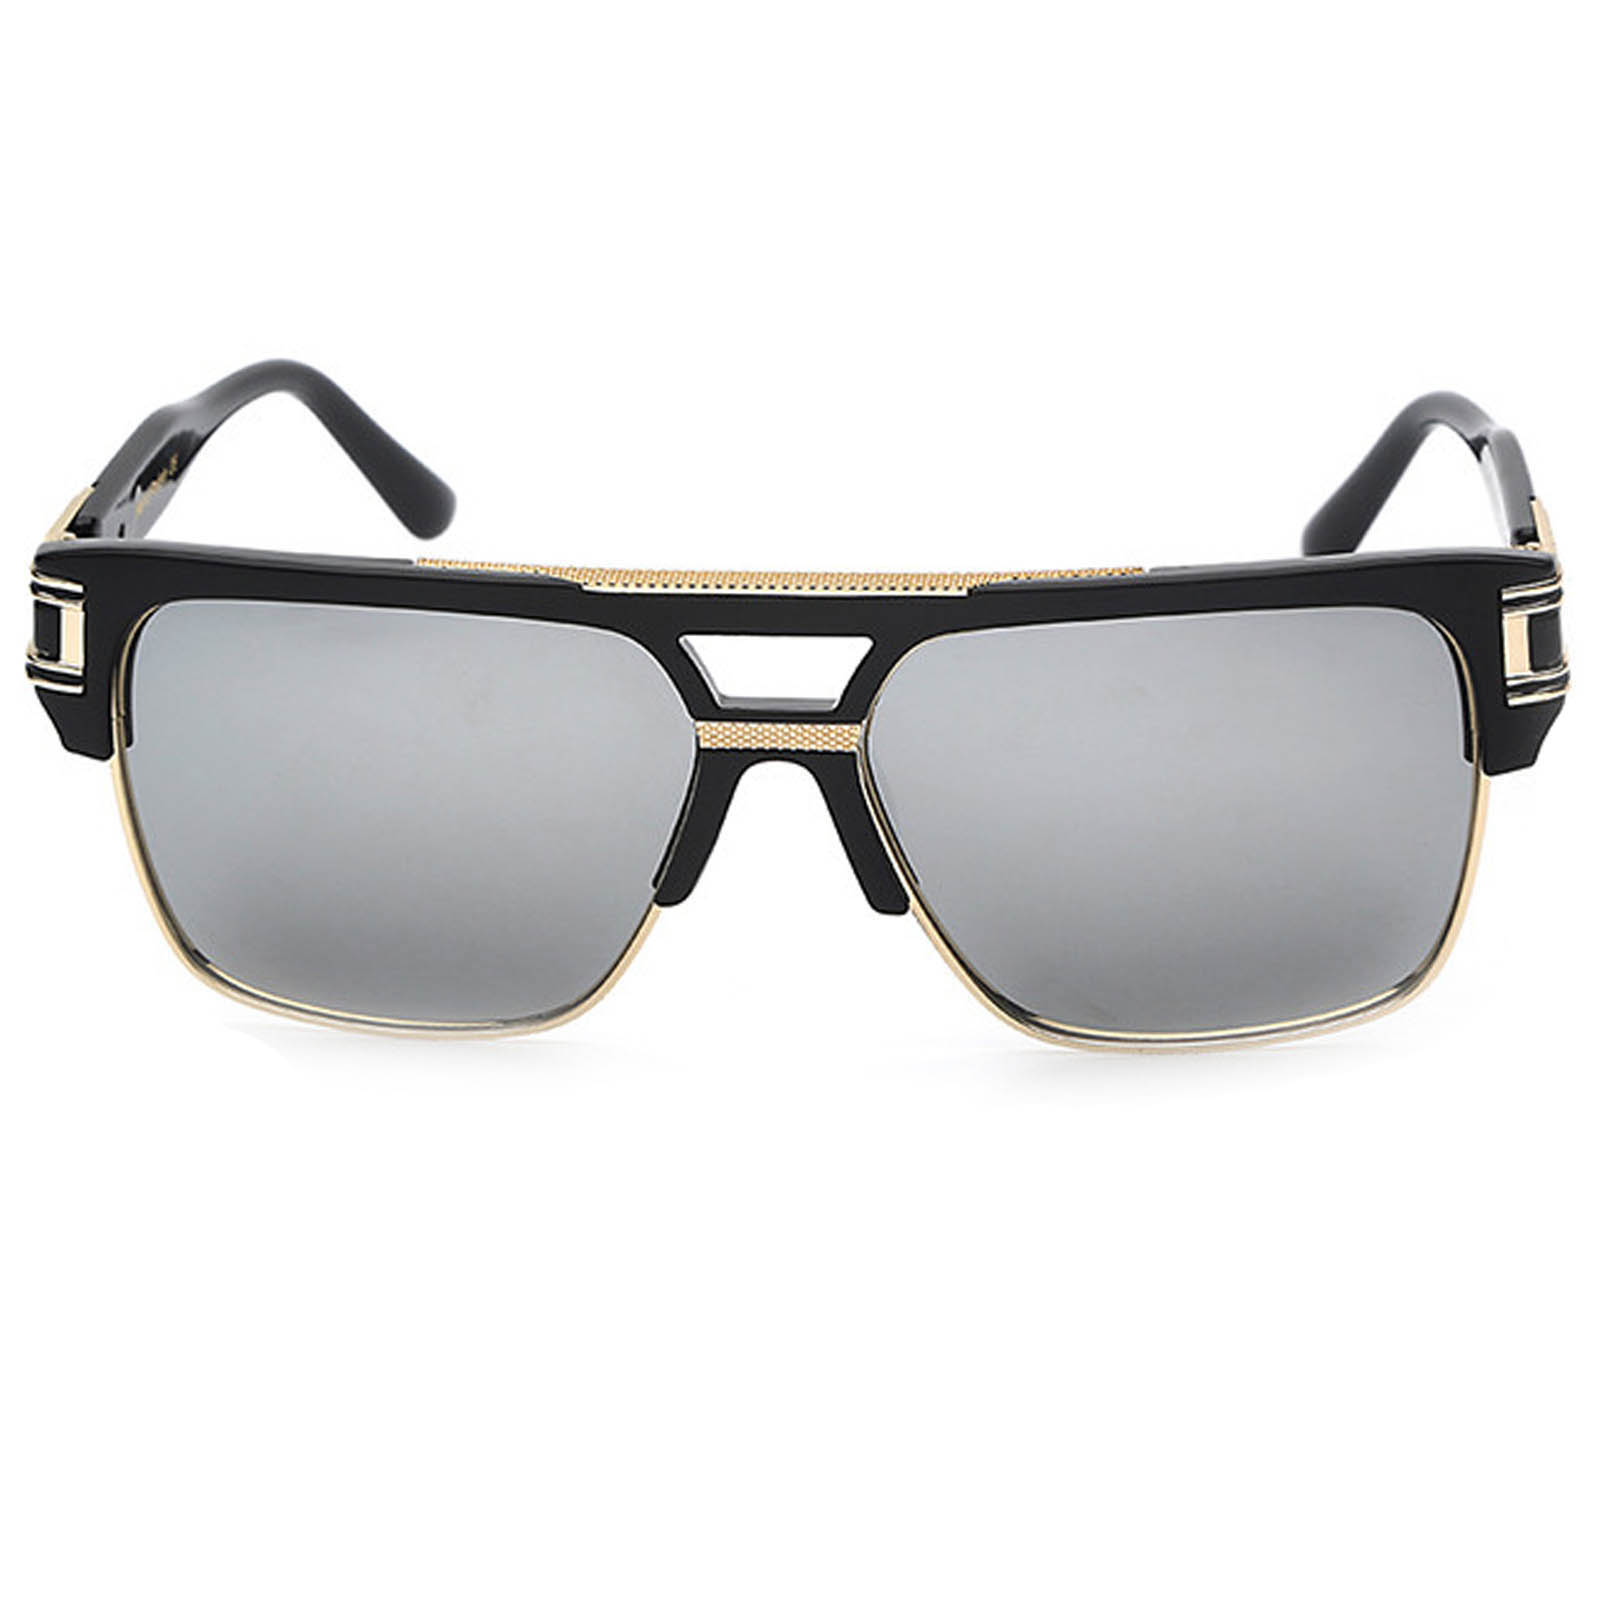 020 C4 Rectangle Sunglasses Men’s Gold Black Frame Silver Mirror Lens ...